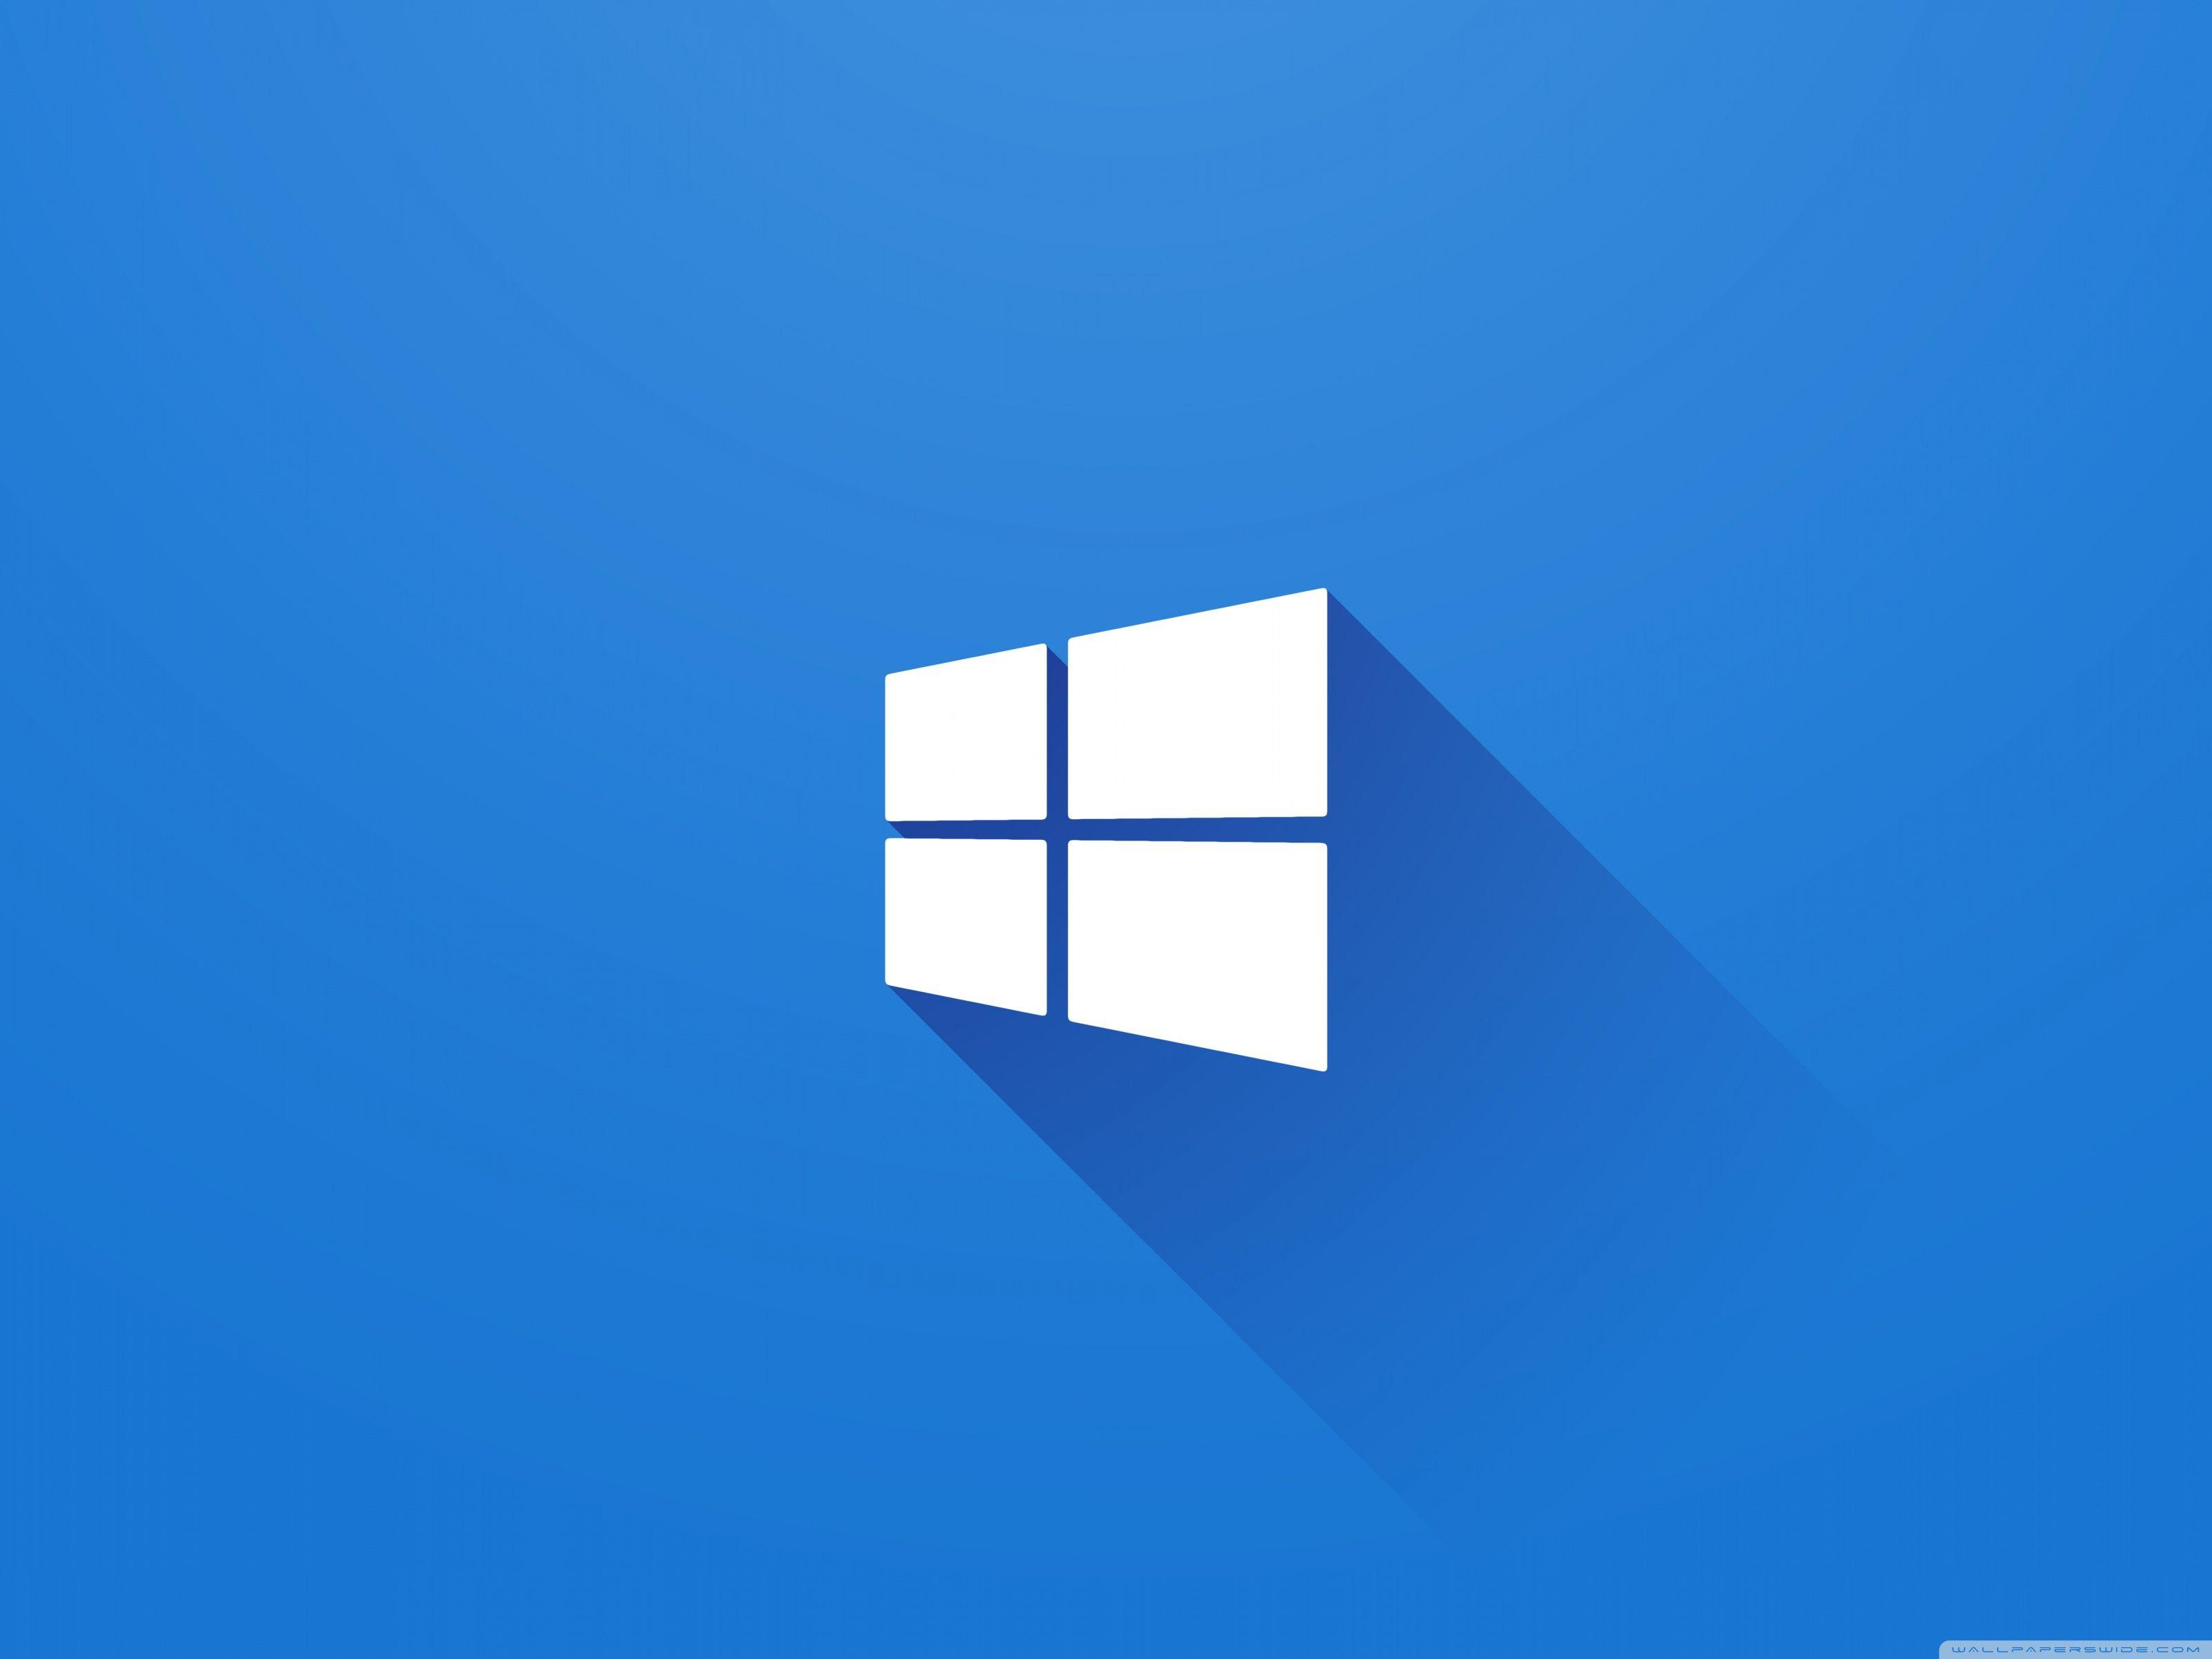 Windows 4 Logo - Windows 10 Logo ❤ 4K HD Desktop Wallpaper for • Wide & Ultra ...